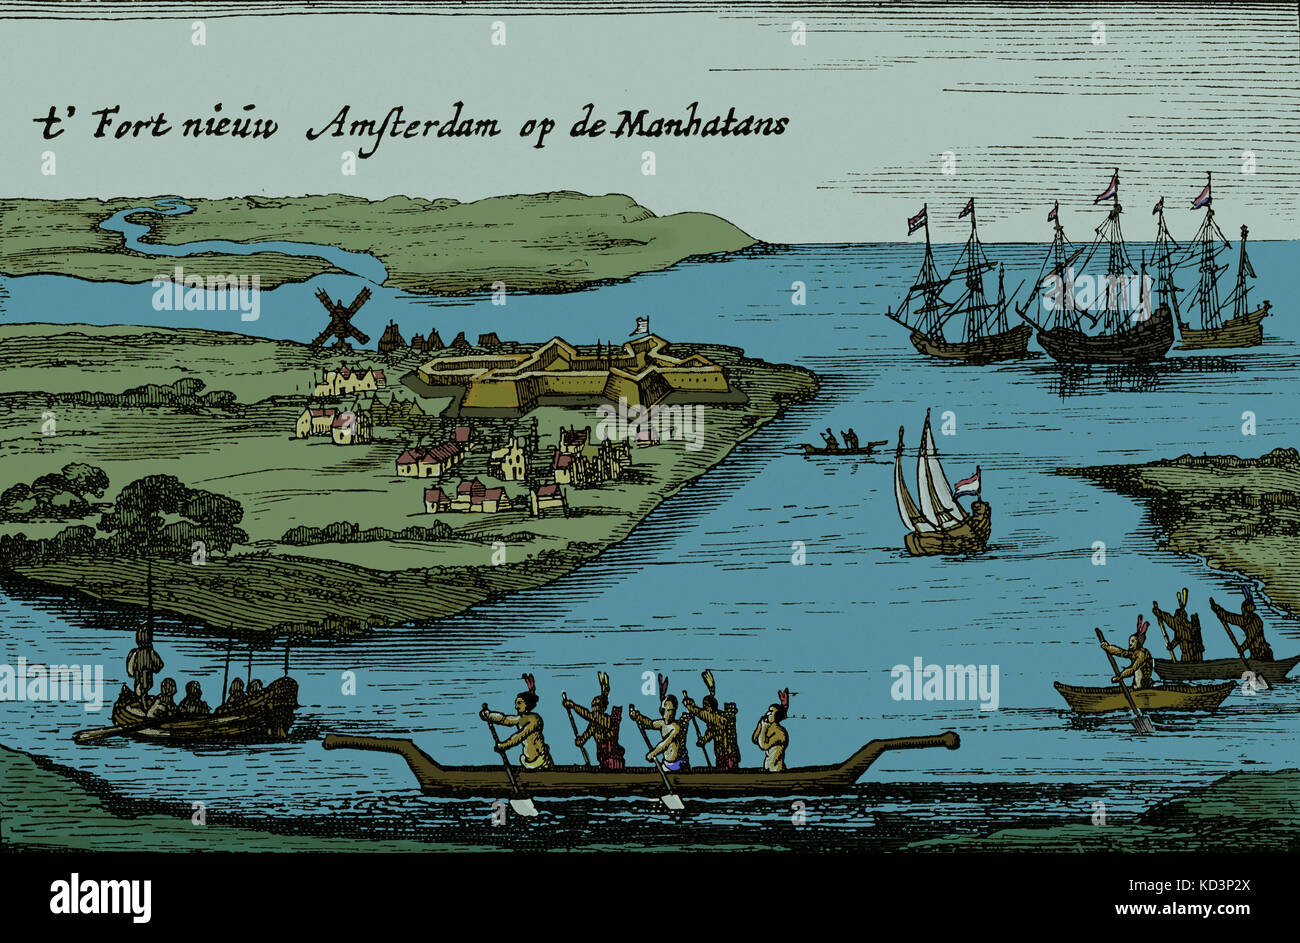 New Amsterdam - Ansicht der niederländischen kolonialen Siedlung, die später New York City wurde. Bildunterschrift lautet: t' Fort Nieuw Amsterdam Op de Manhatans. Auch bezeichnet die Hartgers Ansicht. Herausgegeben von Joost Hartgers, Amsterdam, c. 1626. Stockfoto